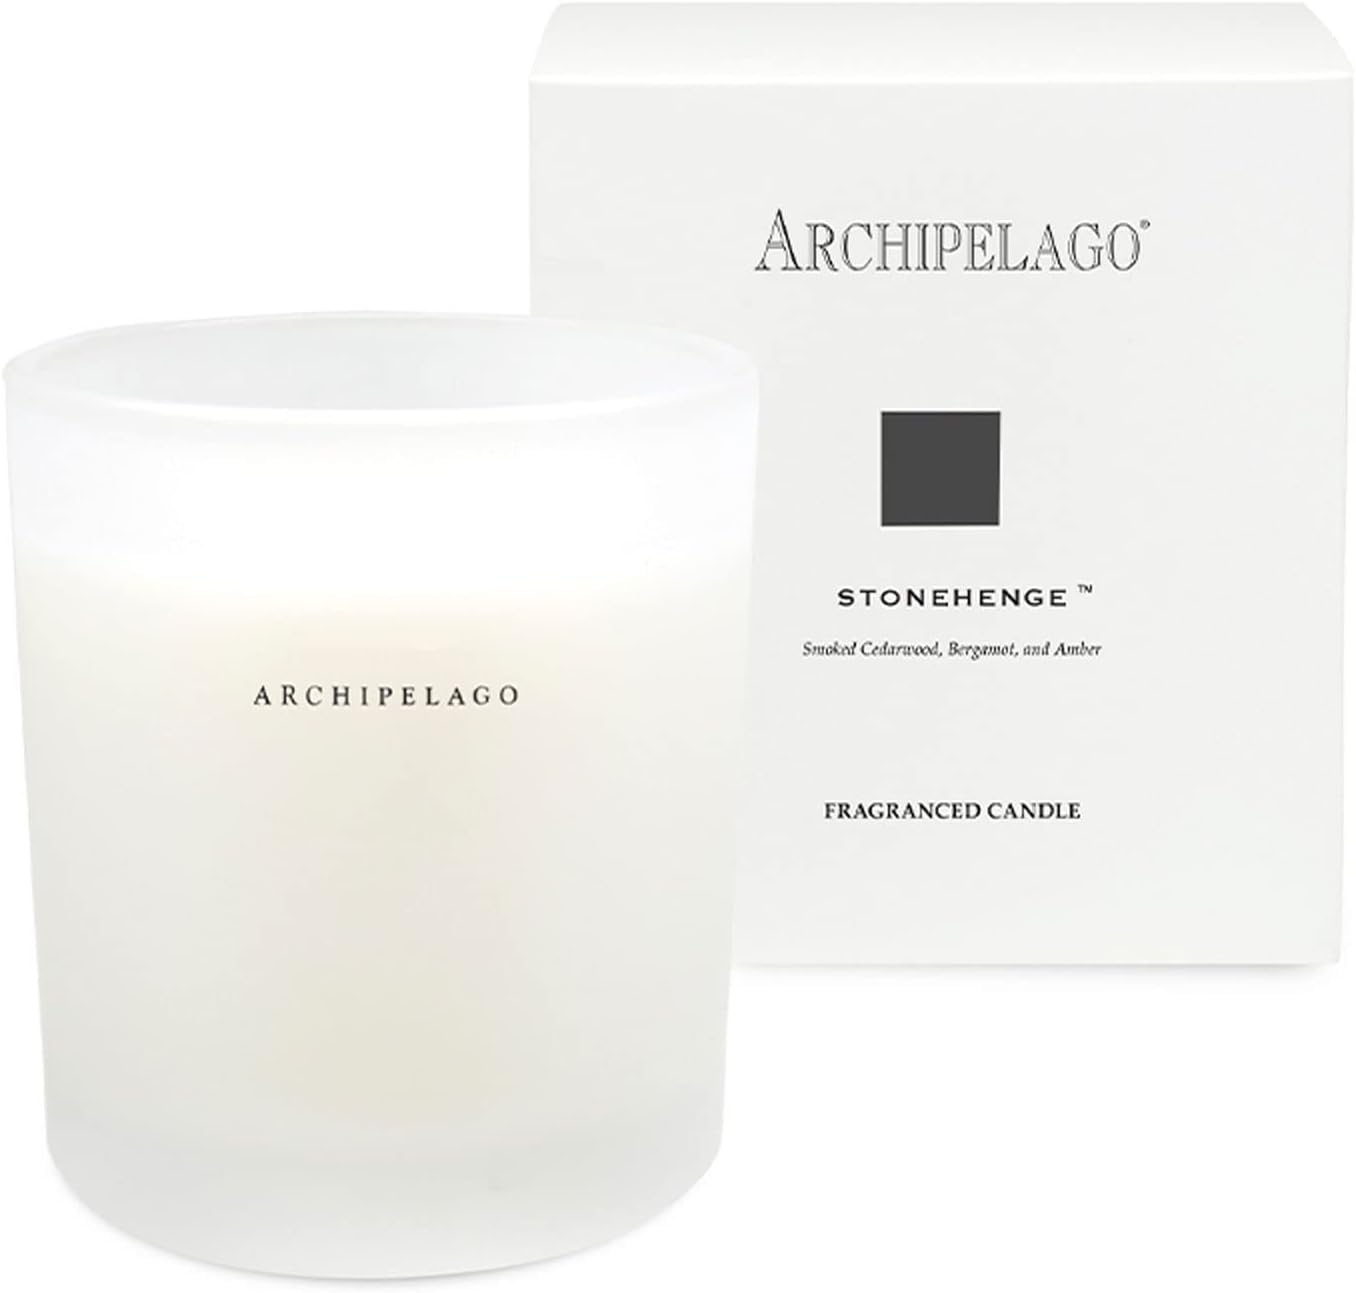 Archipelago Botanicals Stonehenge Boxed Candle. Worldly Scent of Smoked Cedarwood, Bergamot and Amber. Natural Coconut Wax Burns 60 Hours (10 oz)